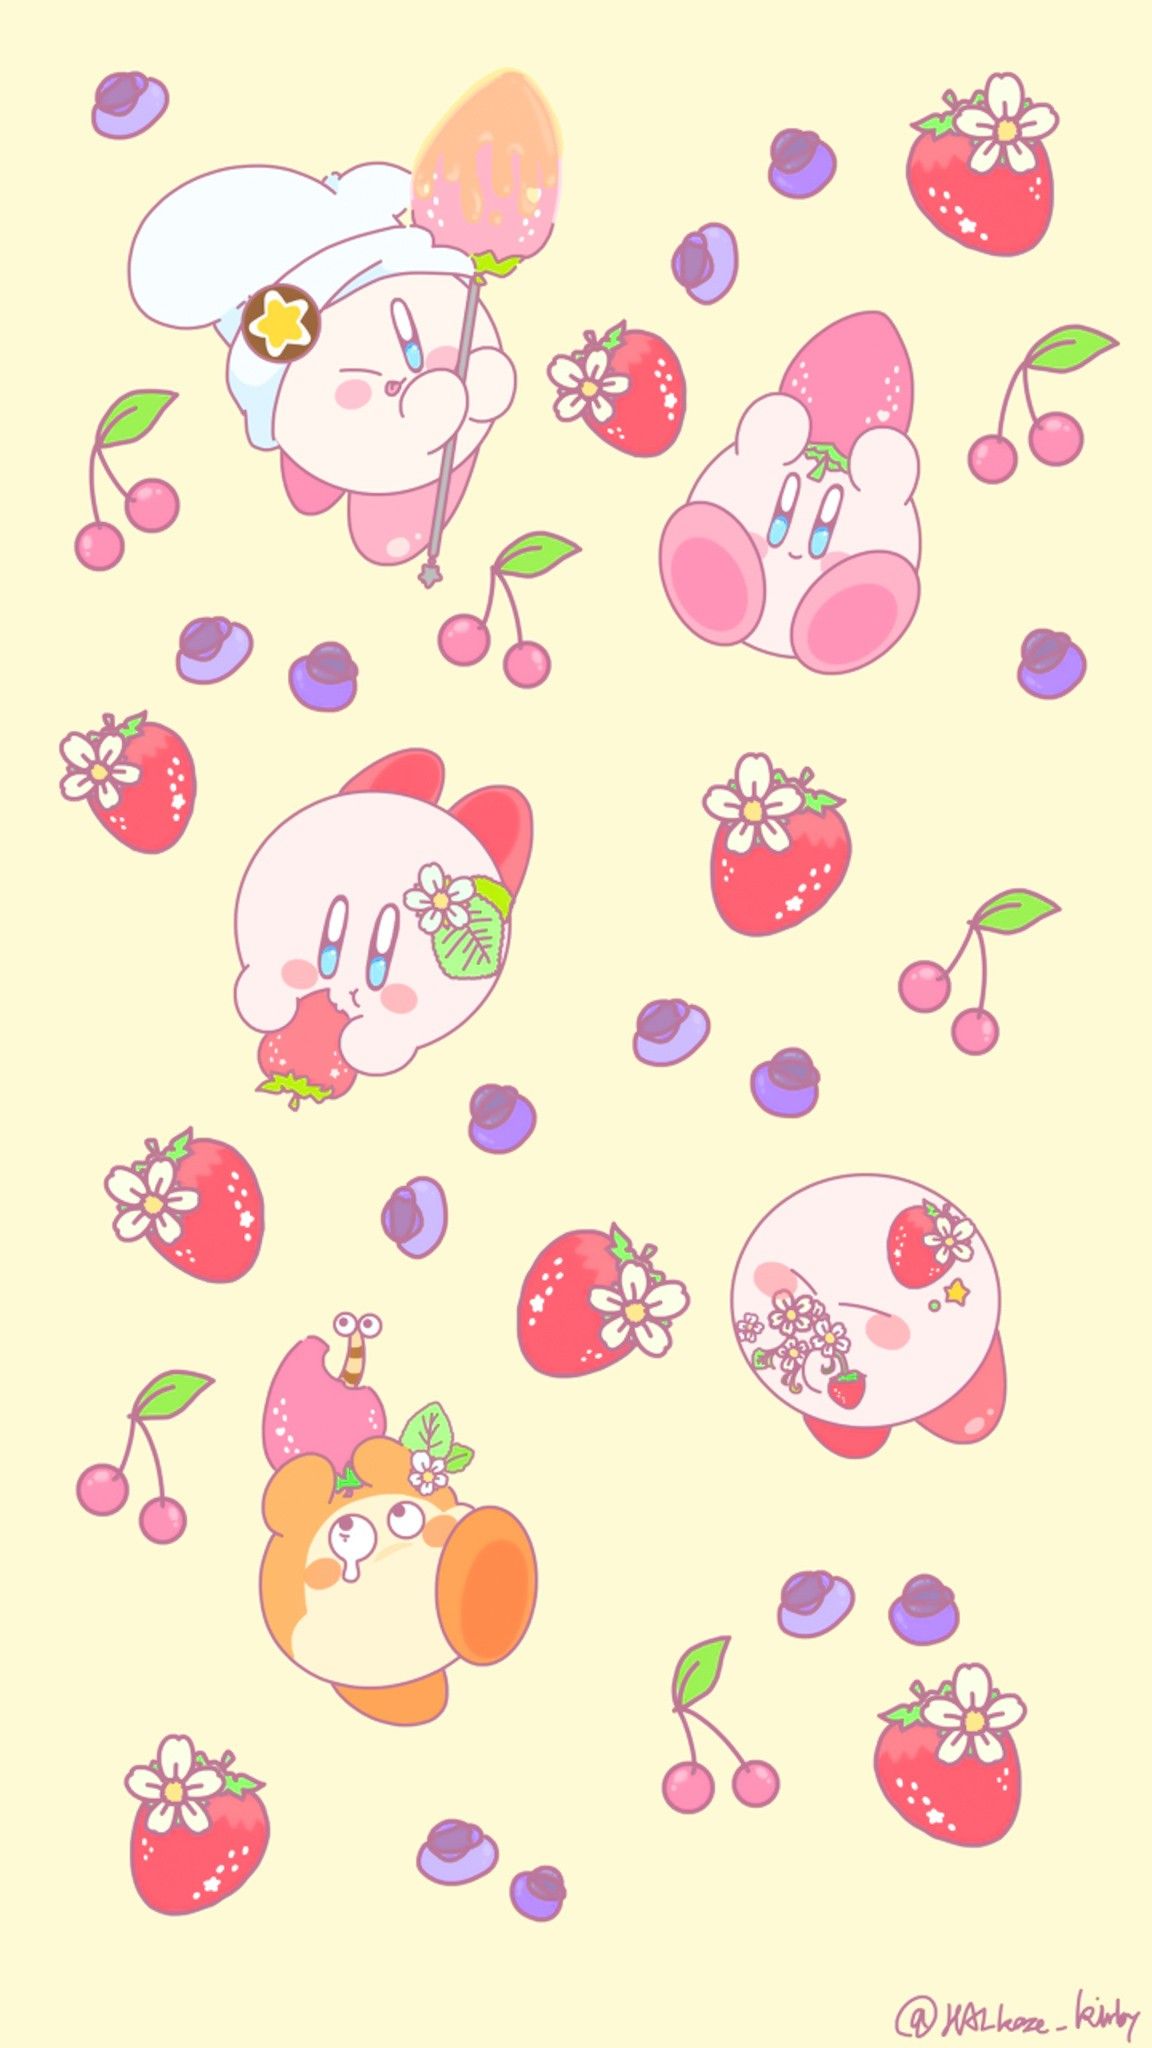 星のカービィKirby. Kirby, Halloween wallpaper iphone, Cute art